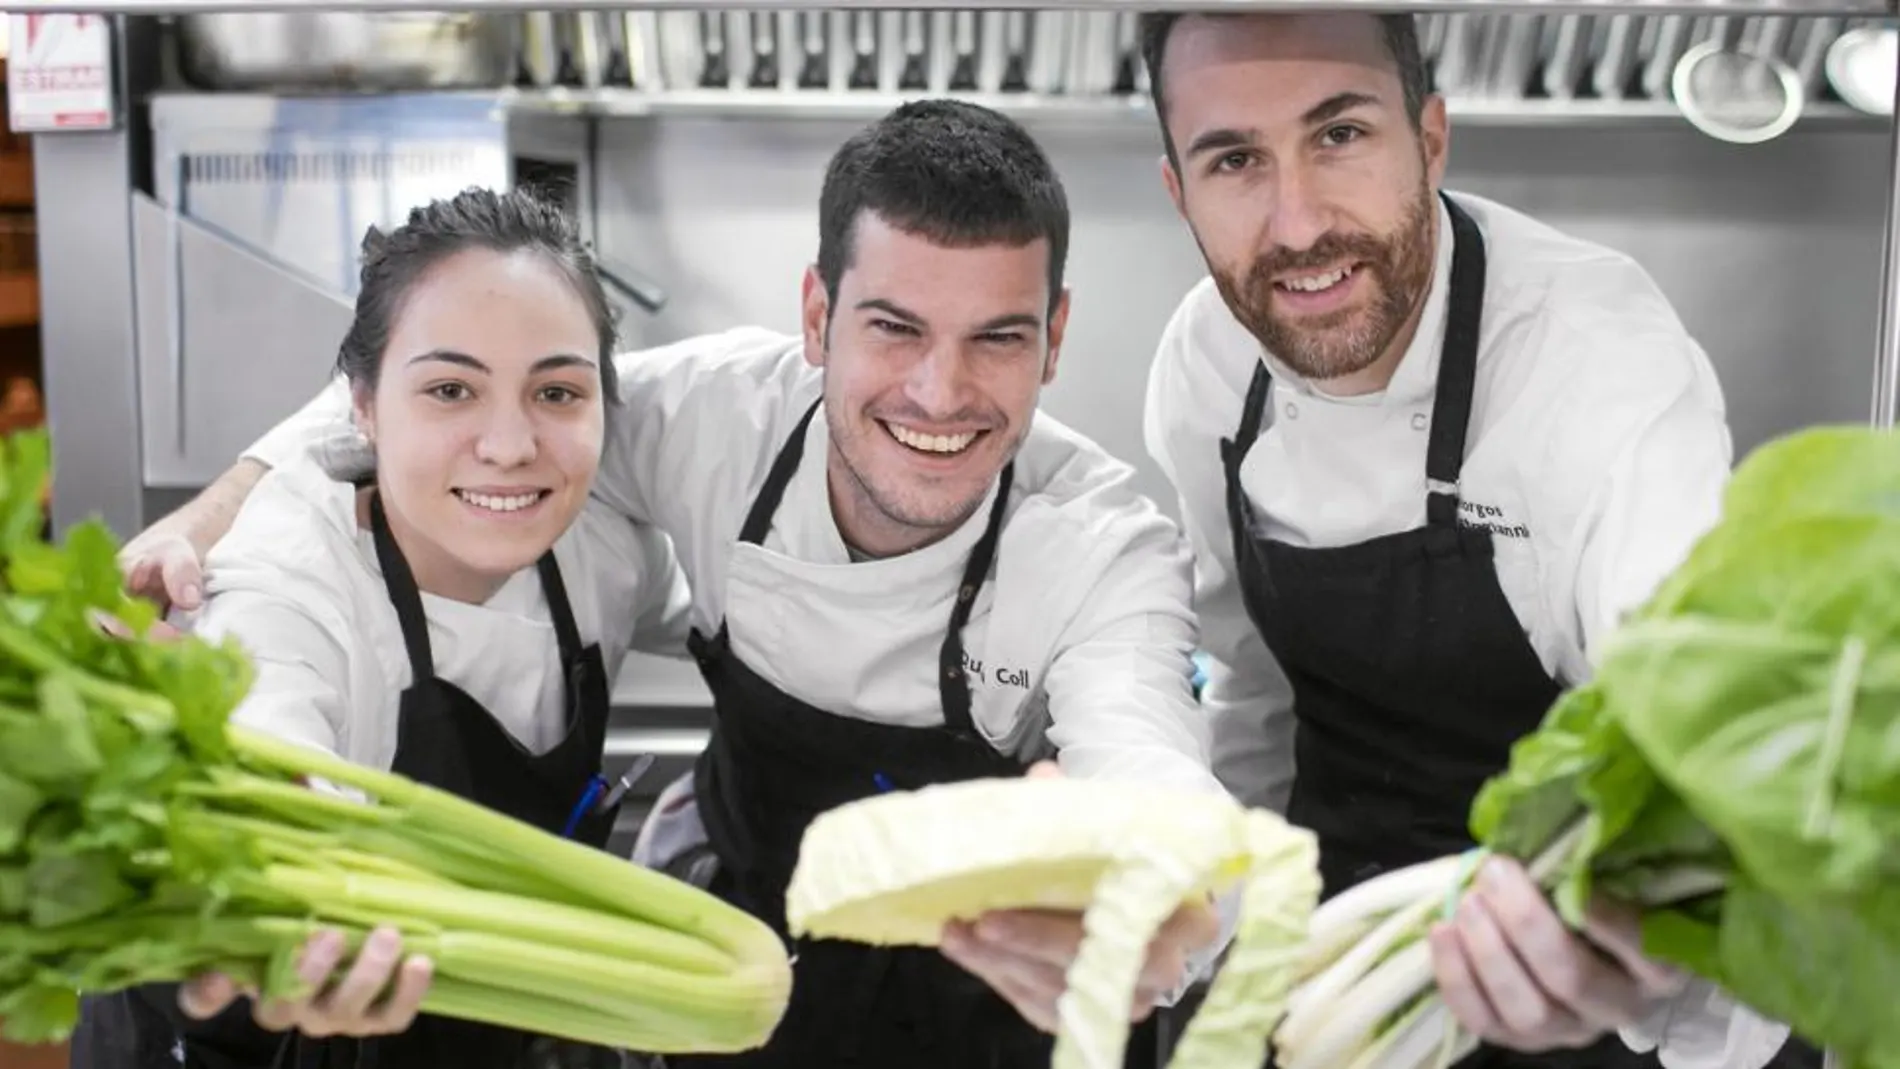 Anna Quiroga, Quim Coll y Giorgos Xristogiannis forman el equipo del restaurante 4 amb 5 Mujades de Barcelona